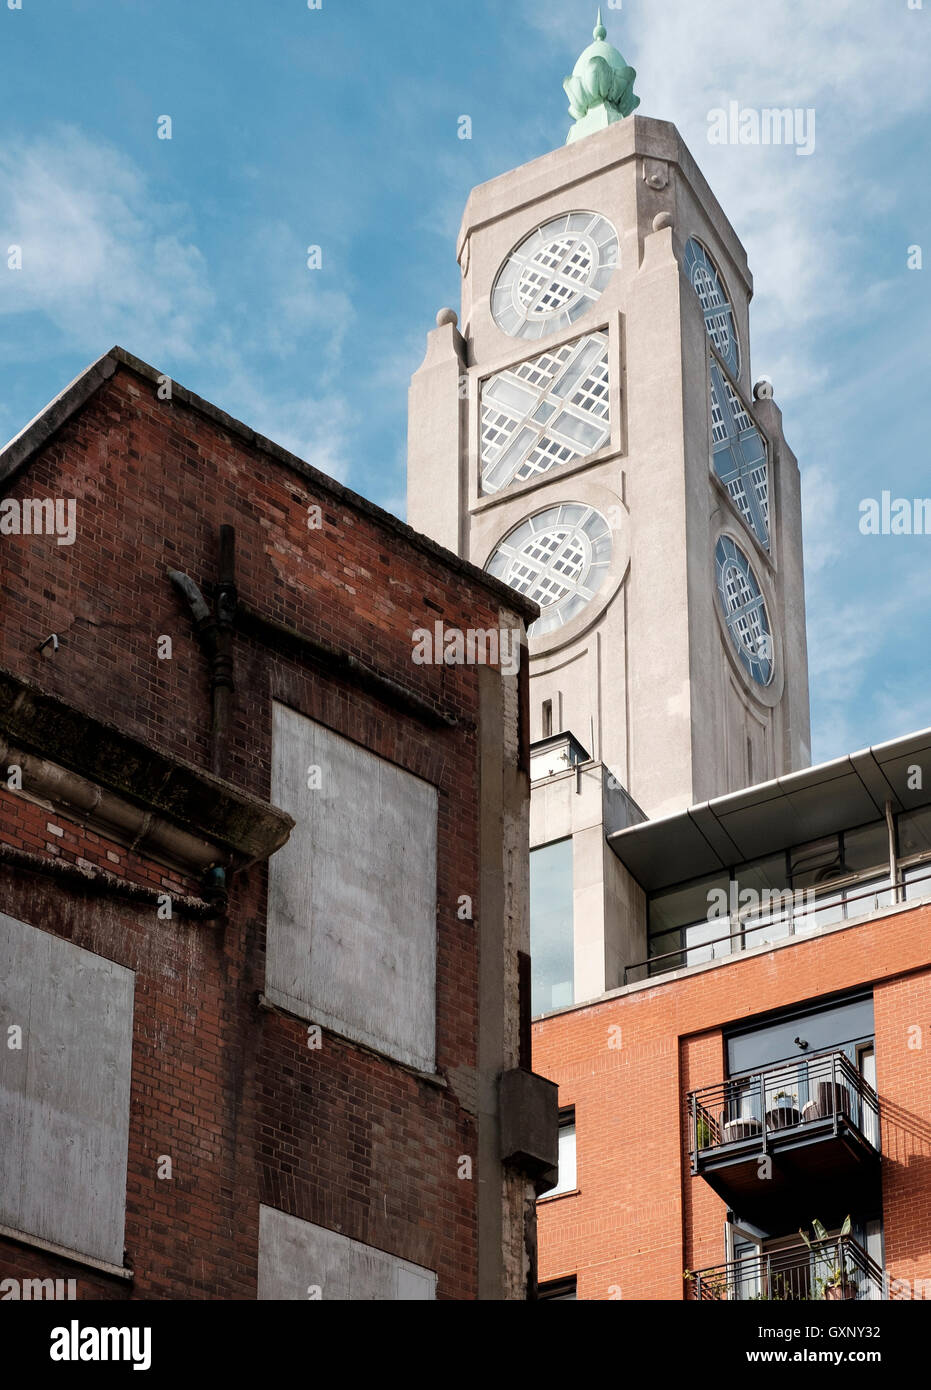 Londra - 12 Settembre 2016: l'architettura dell'oxo Tower su London South Bank contrasta con il vecchio edificio. Foto Stock